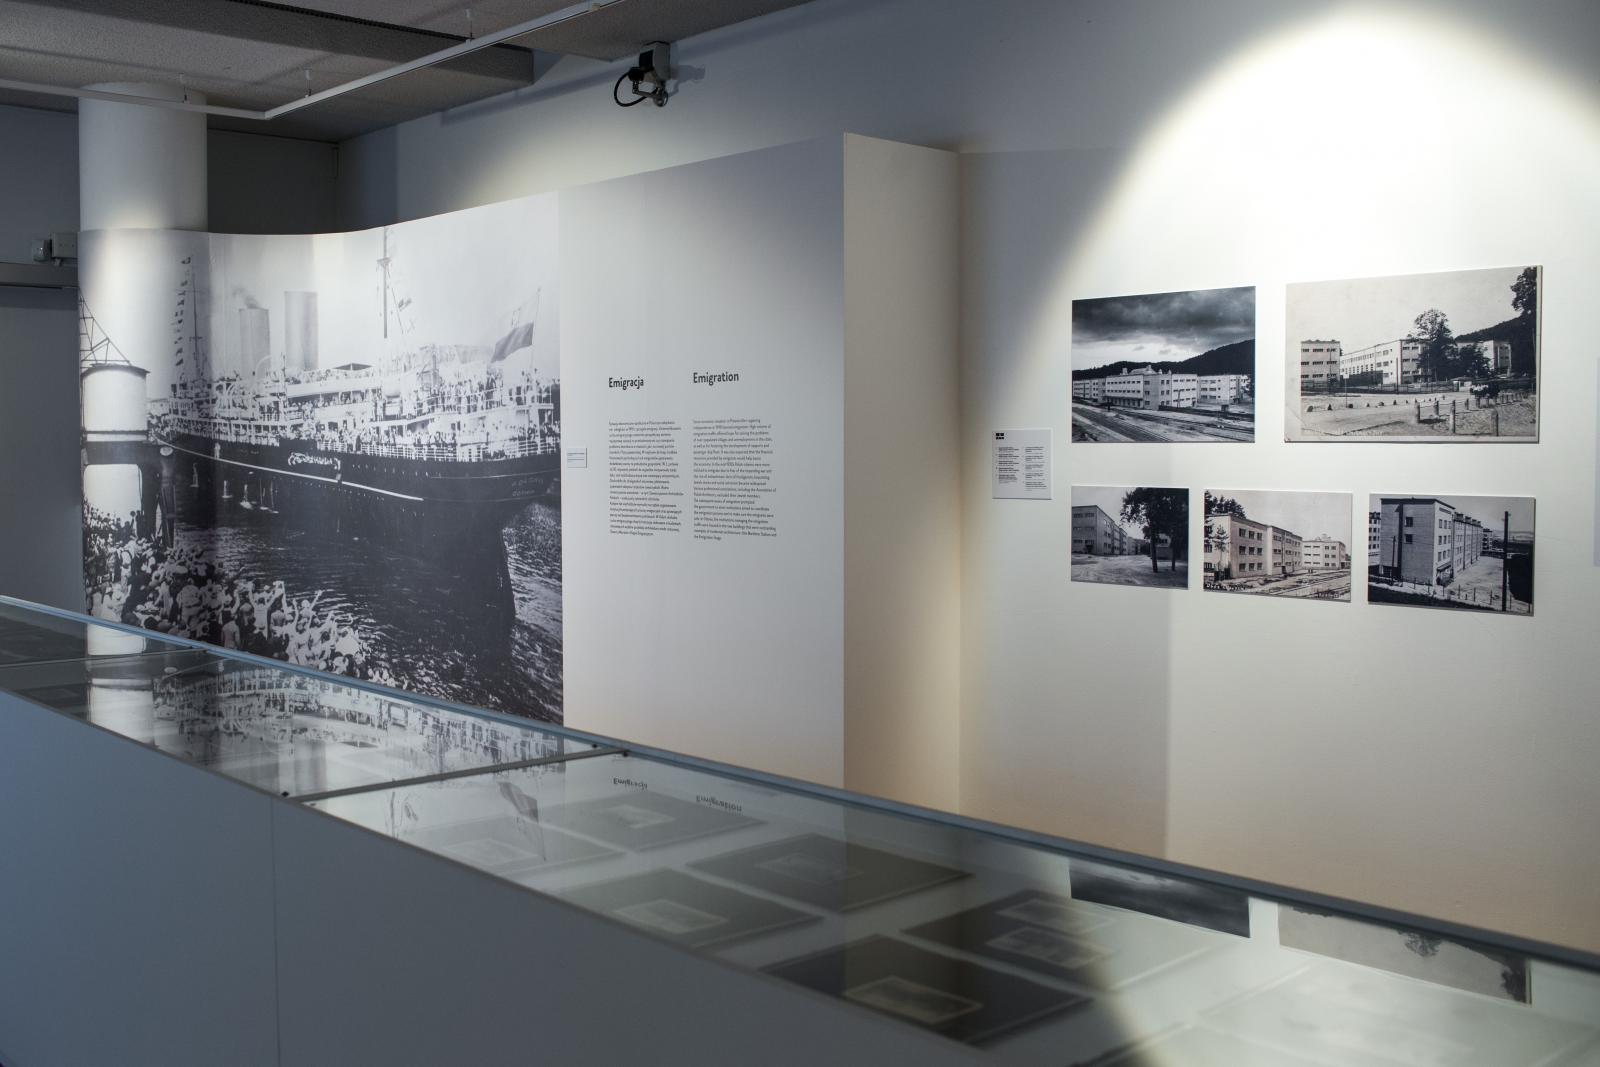 Wystawa czasowa "Gdynia - Tel Awiw" w Muzeum POLIN. Na zdjęciu ściany, na których znajdują się reprodukcje zdjęć z okresu budowy i rozkwitu Gdyni w kolorystyce czarno-białej.